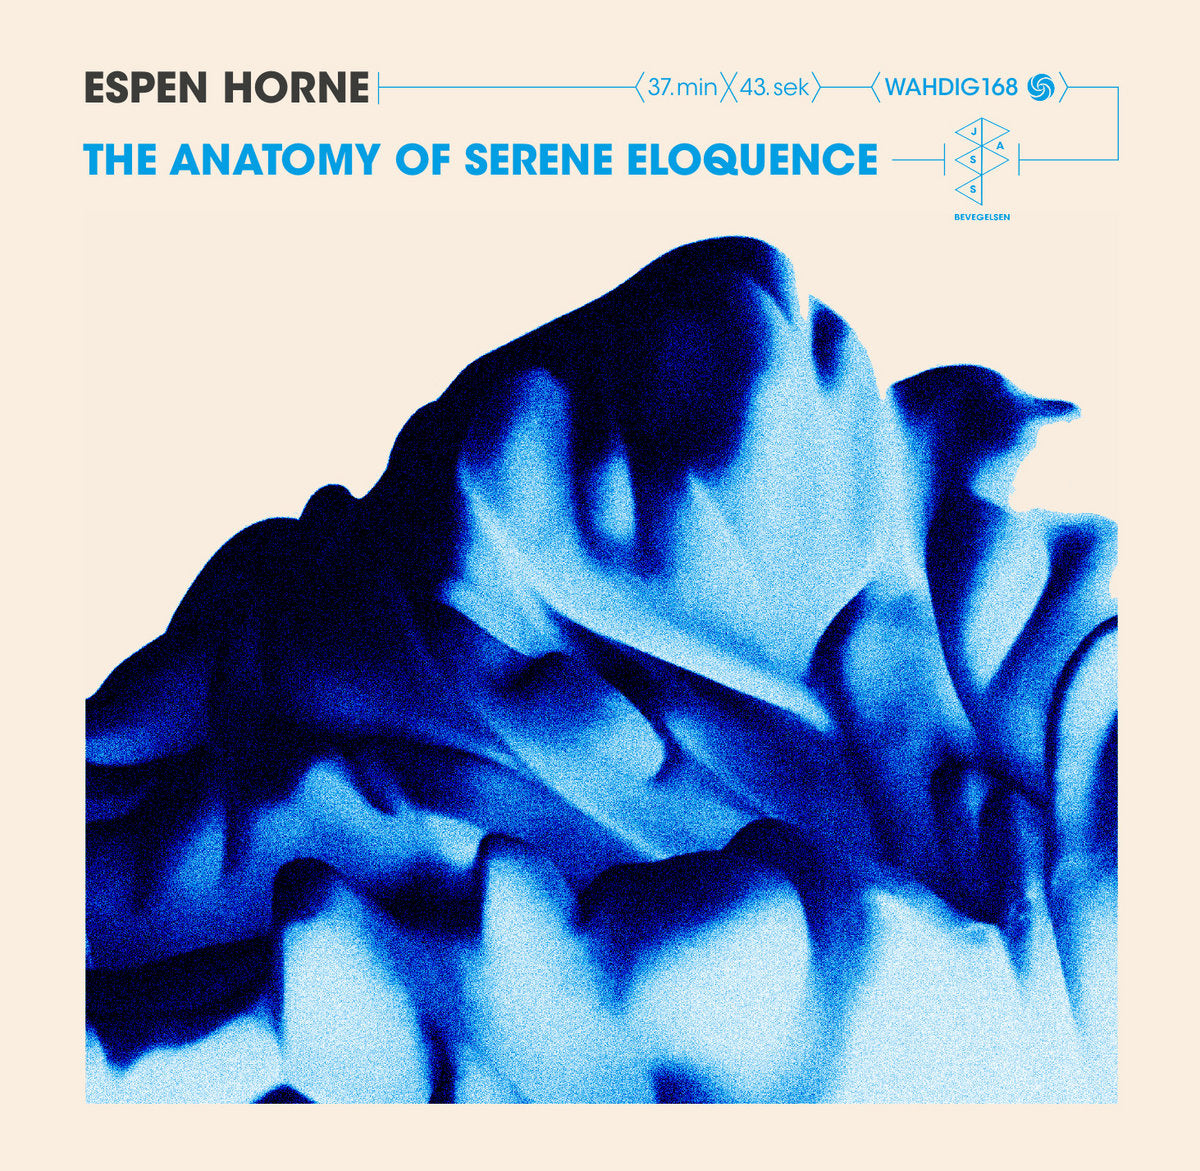 Espen Horne - The Anatomy Of Serene Eloquence